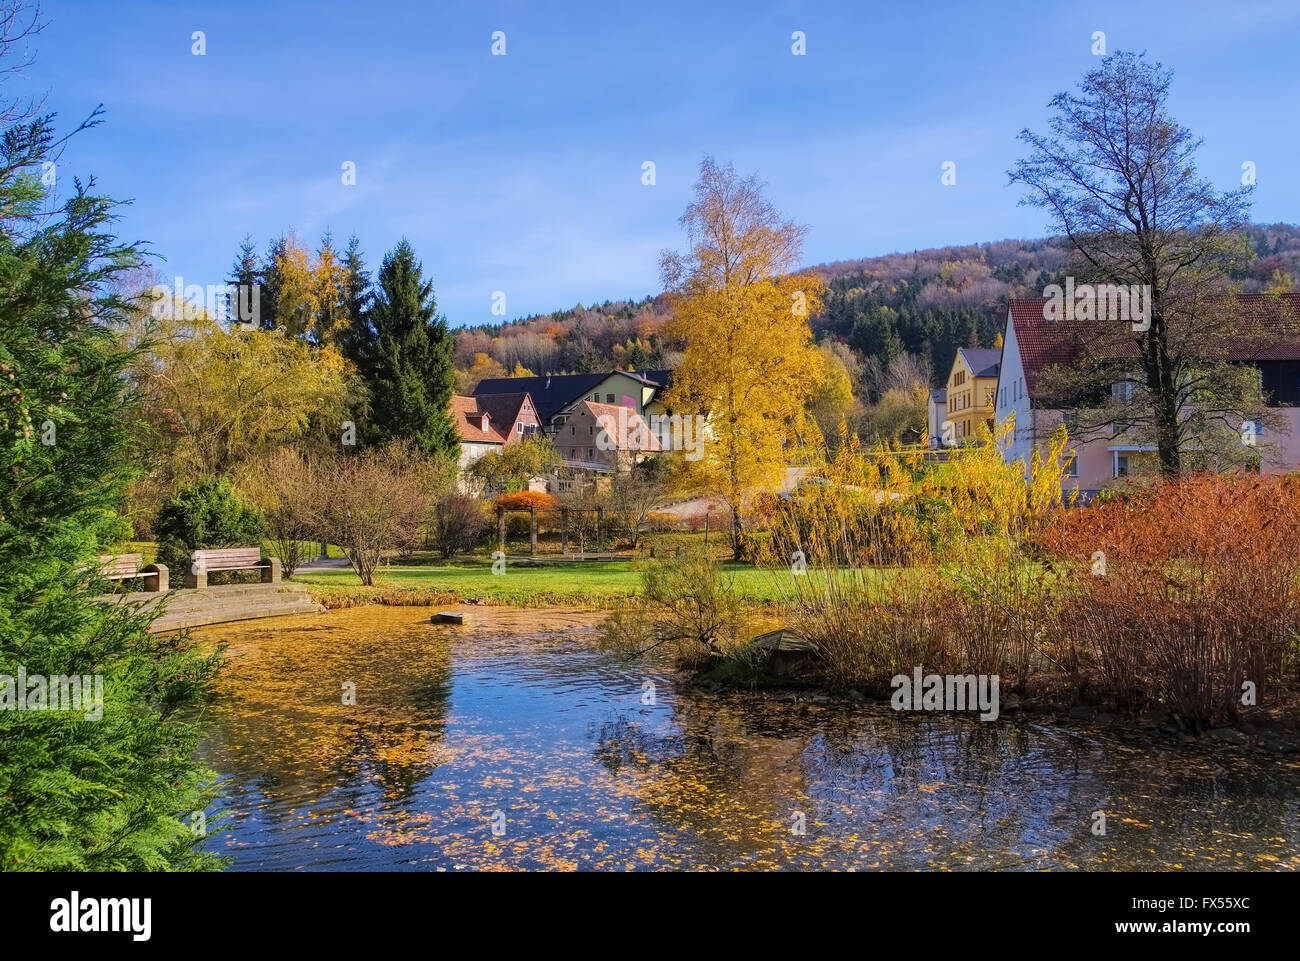 Jonsdorf Park im Herbst im Zittauer Gebirge - Jonsdorf Park in fall in Zittau Mountains Stock Photo